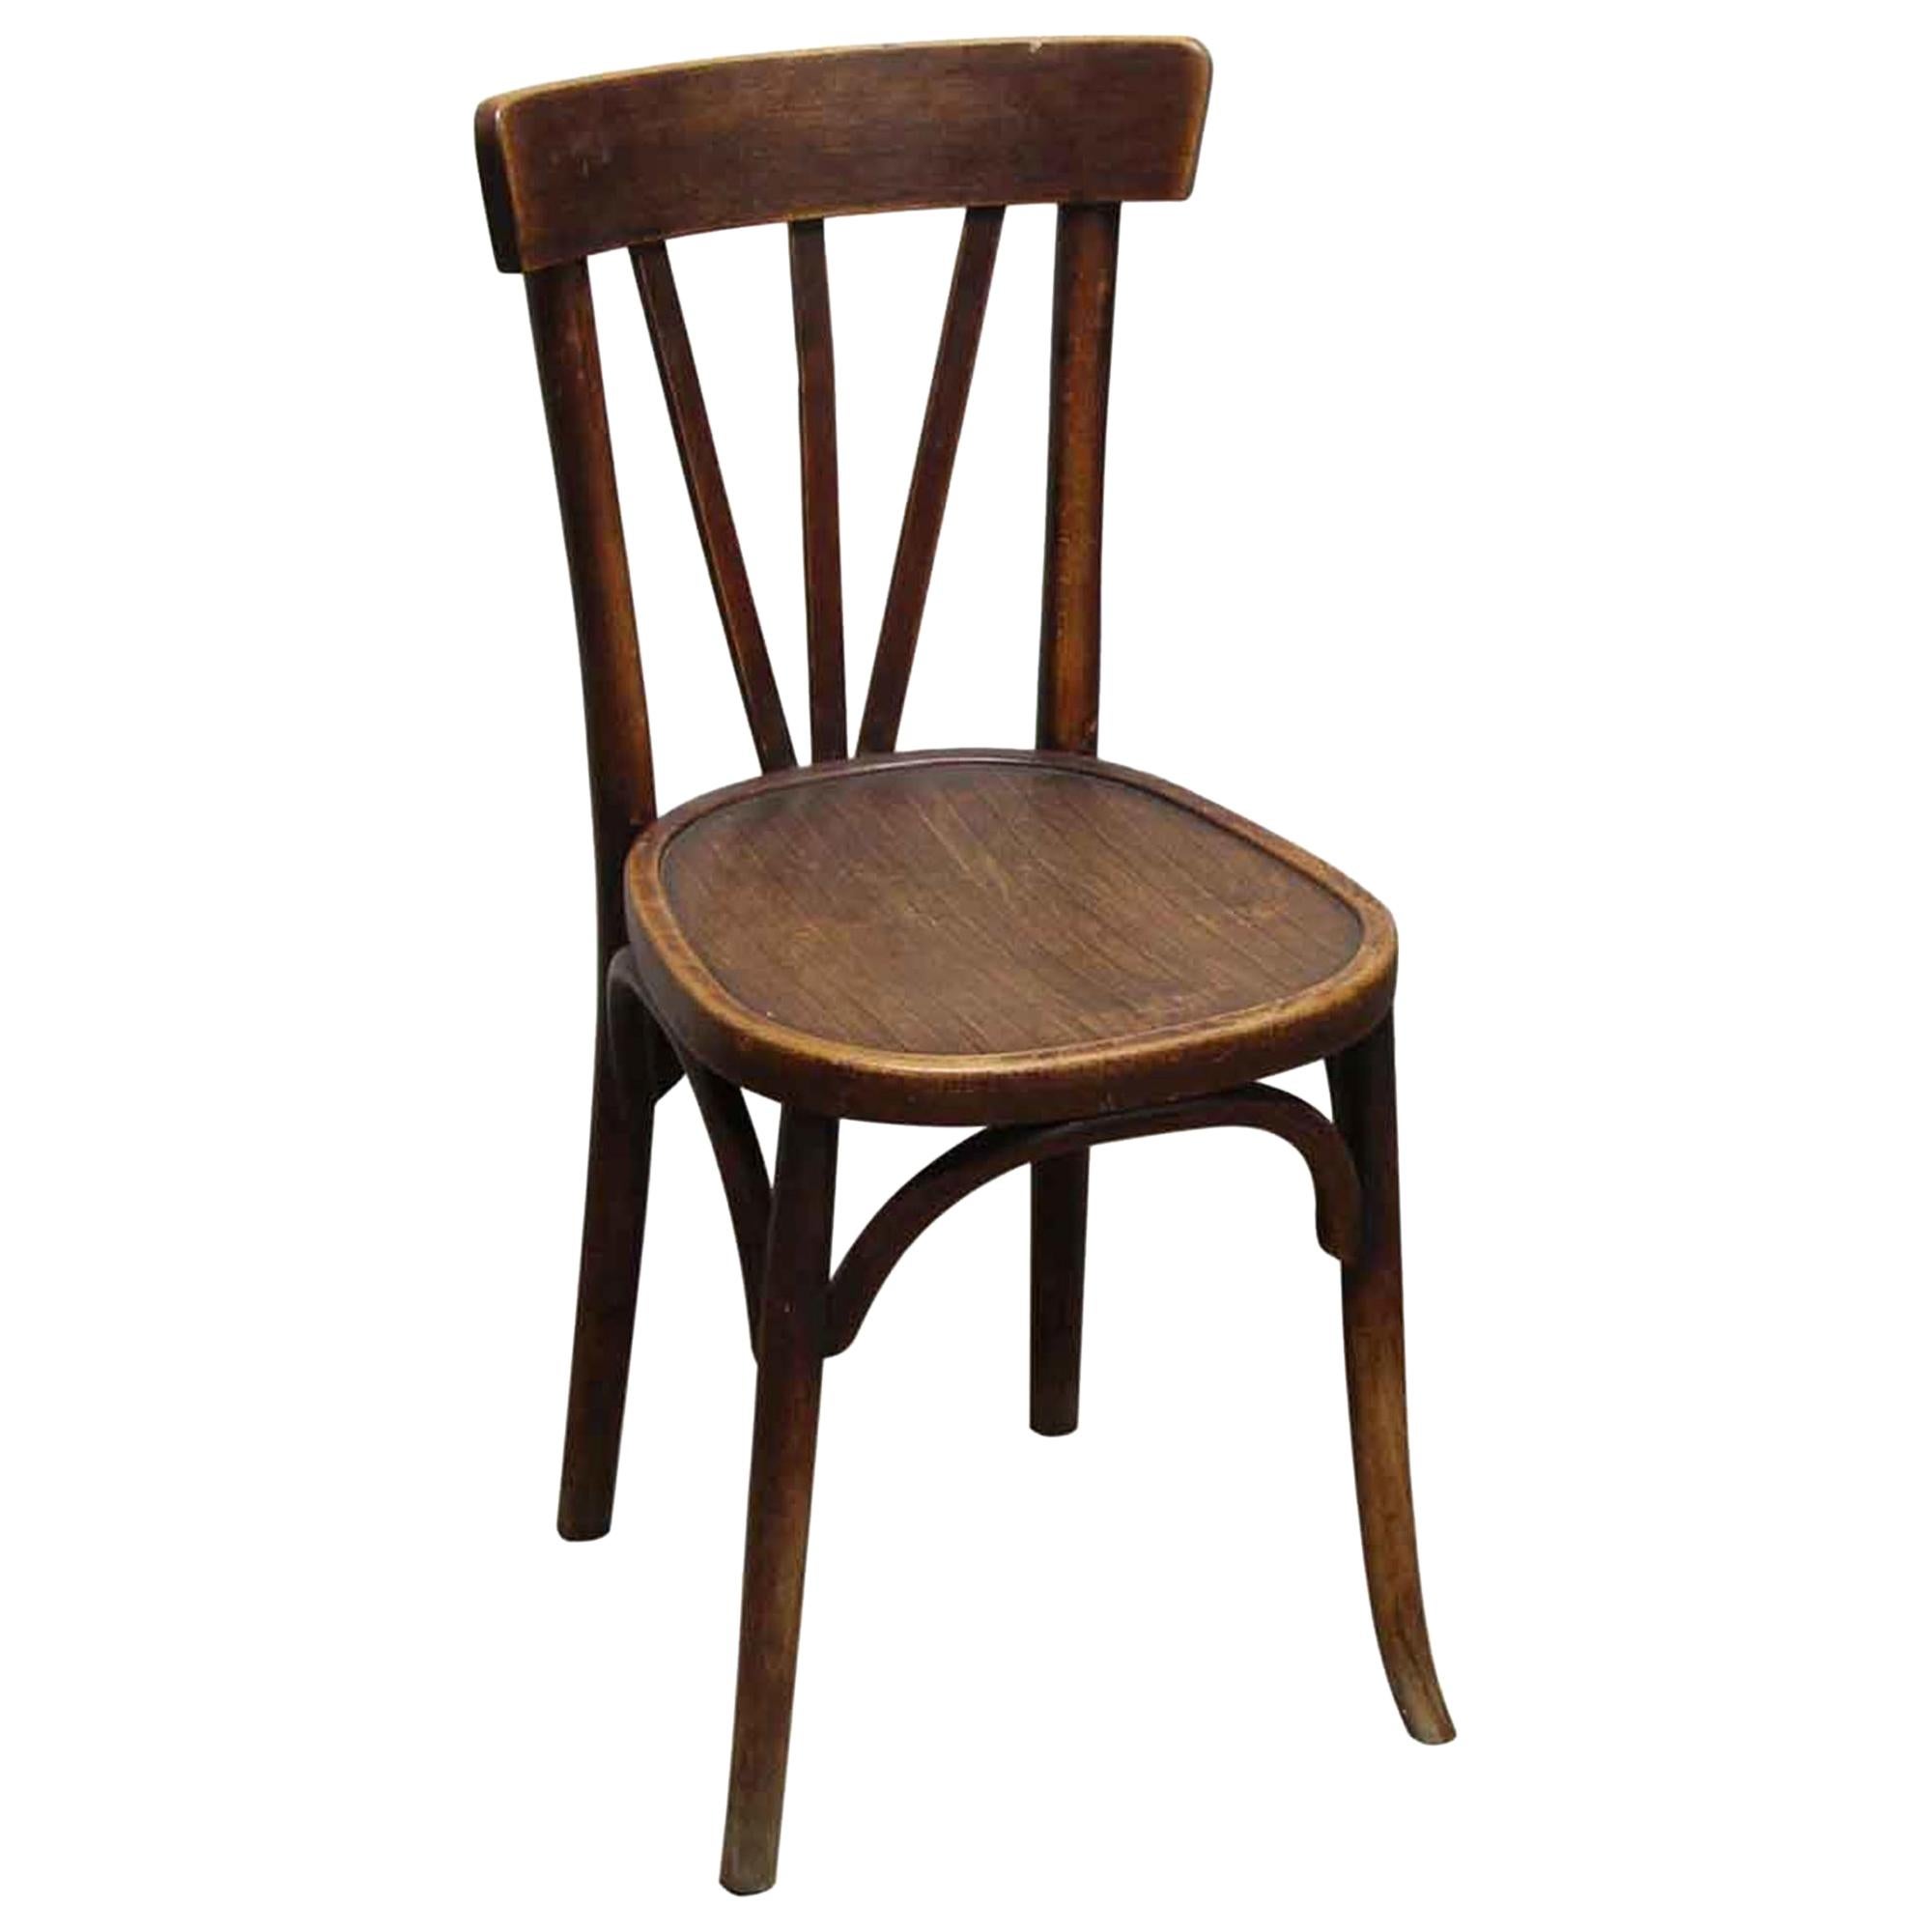 1980s French Dark Tone Wooden Bistro Chair